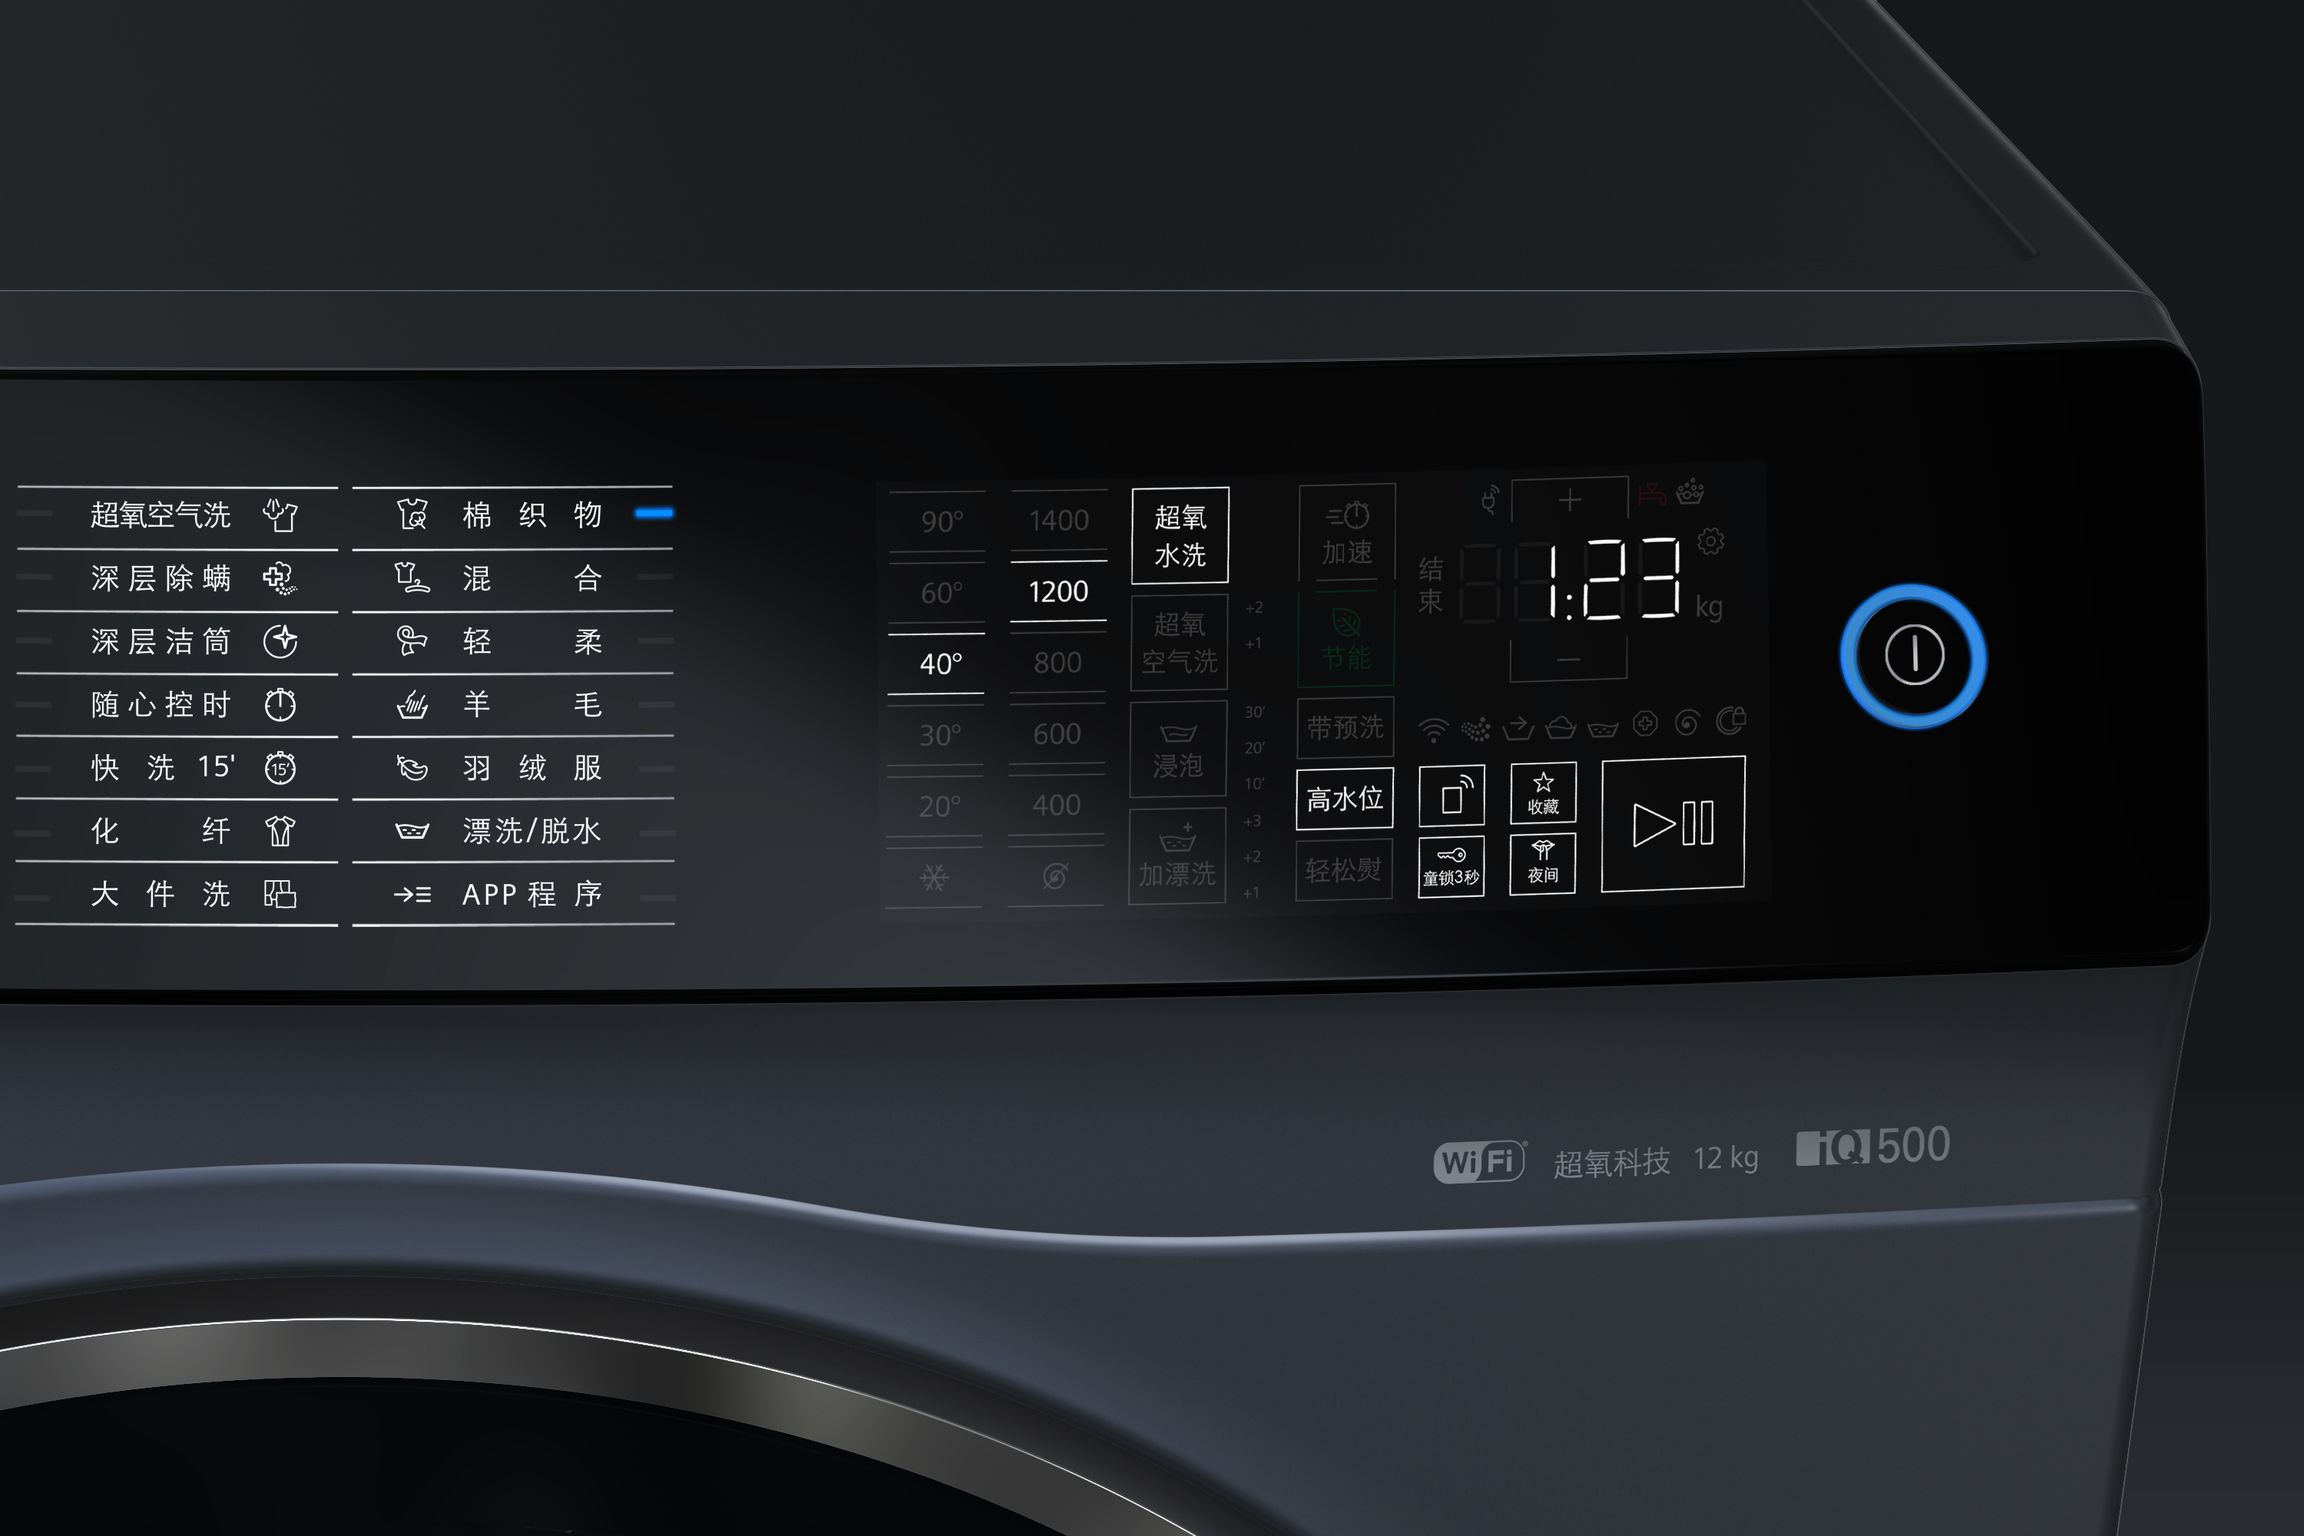 Siemens IQ500 washing machine dark lake